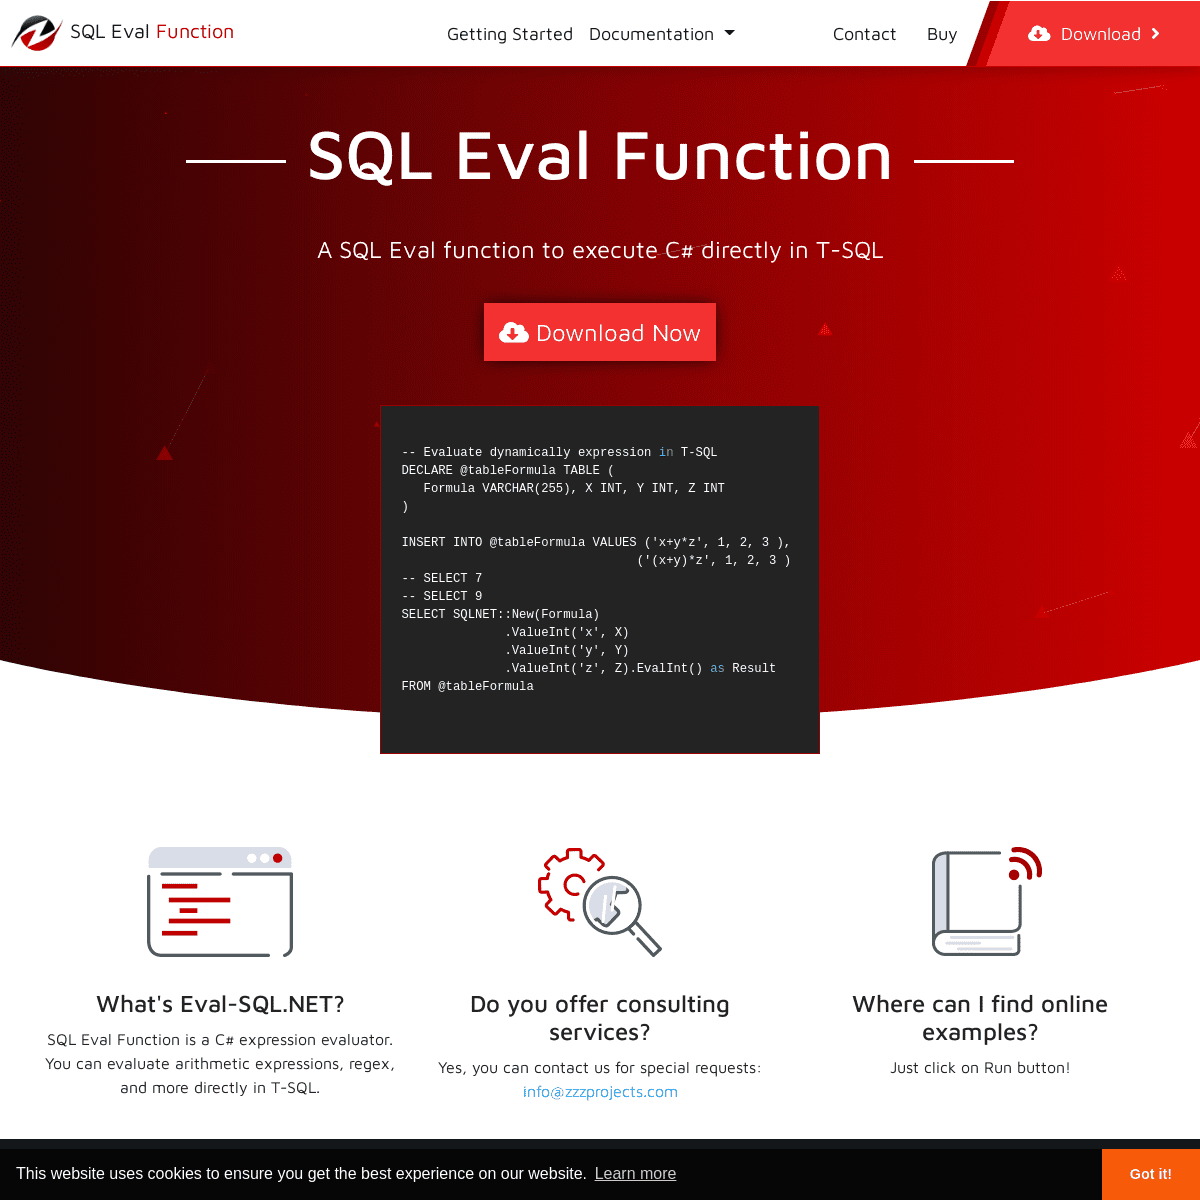 A complete backup of eval-sql.net